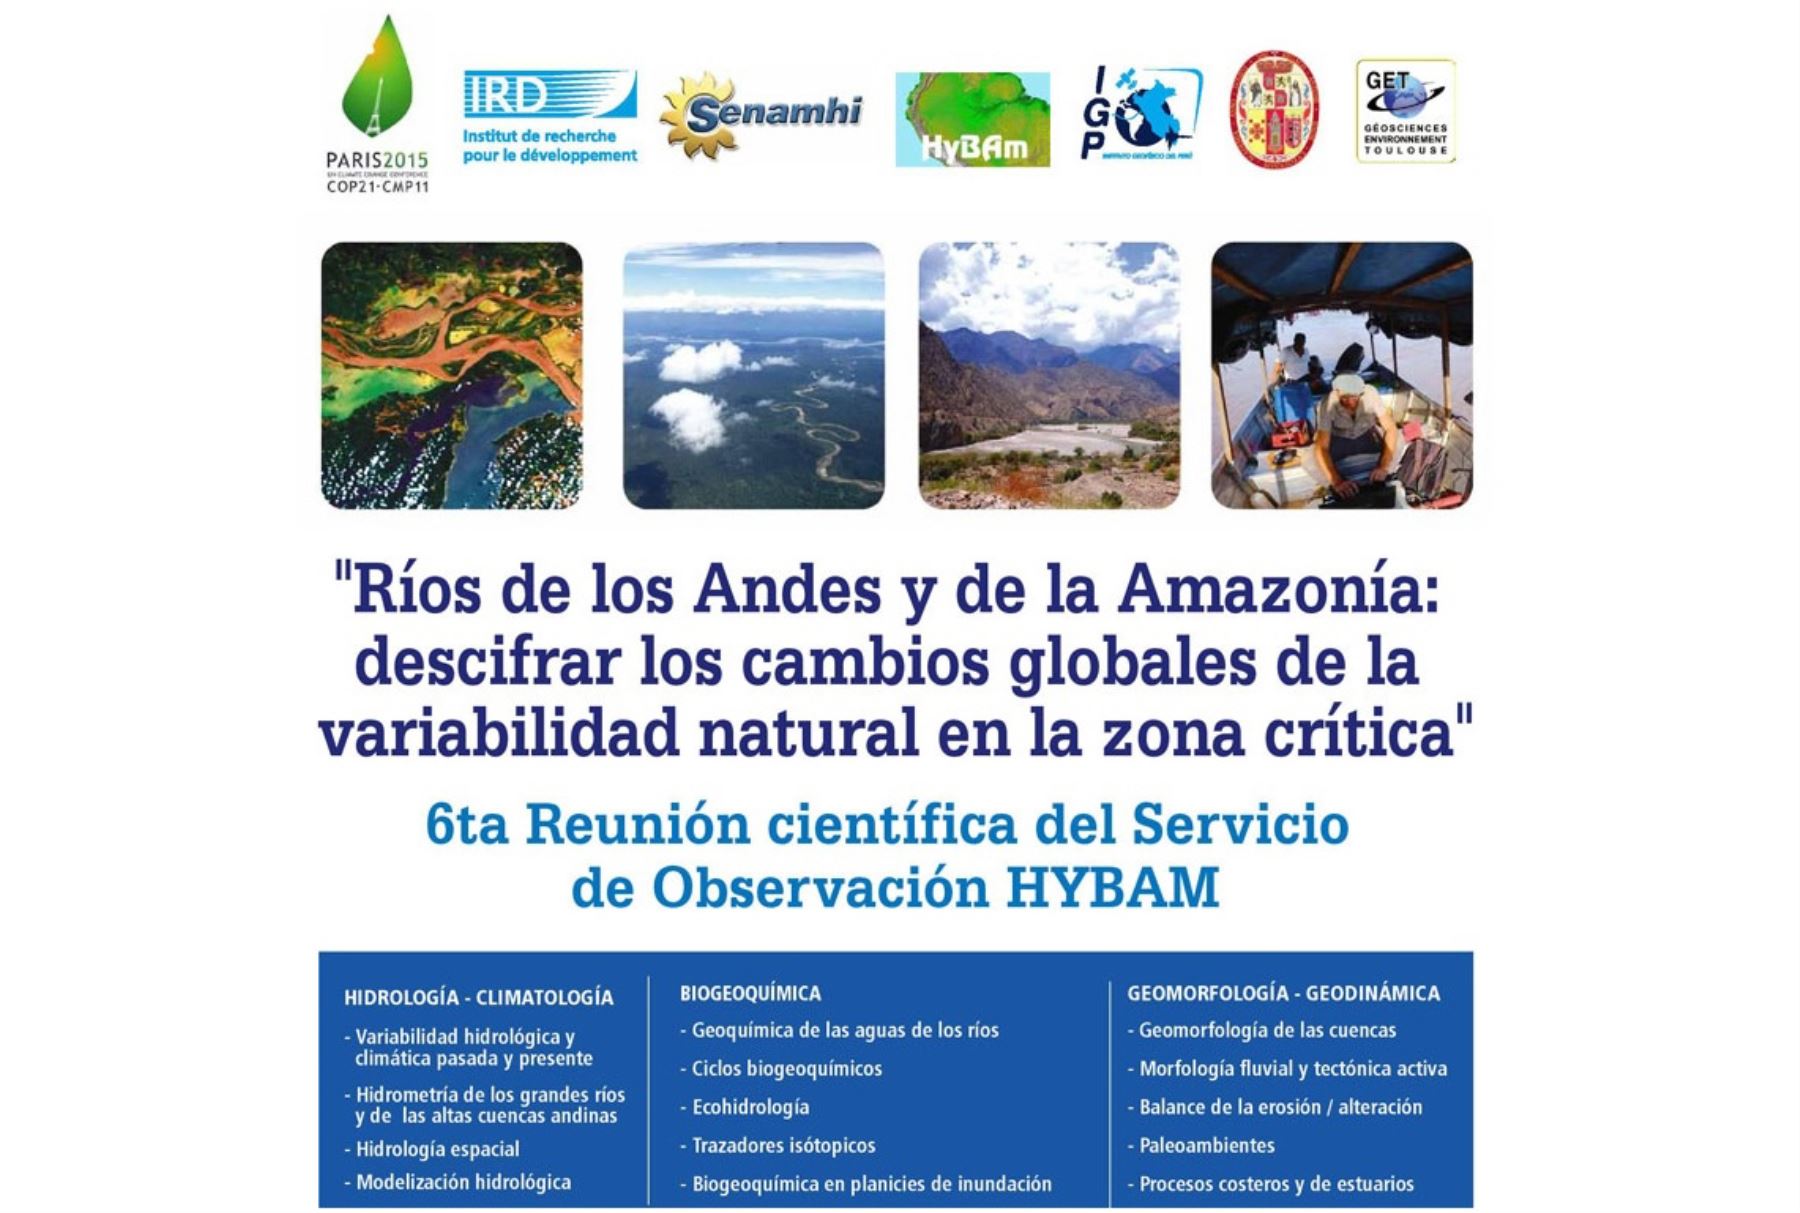 Sexta reunión del Observatorio HYBAM se realizará en Cusco del 26 al 30 de octubre.